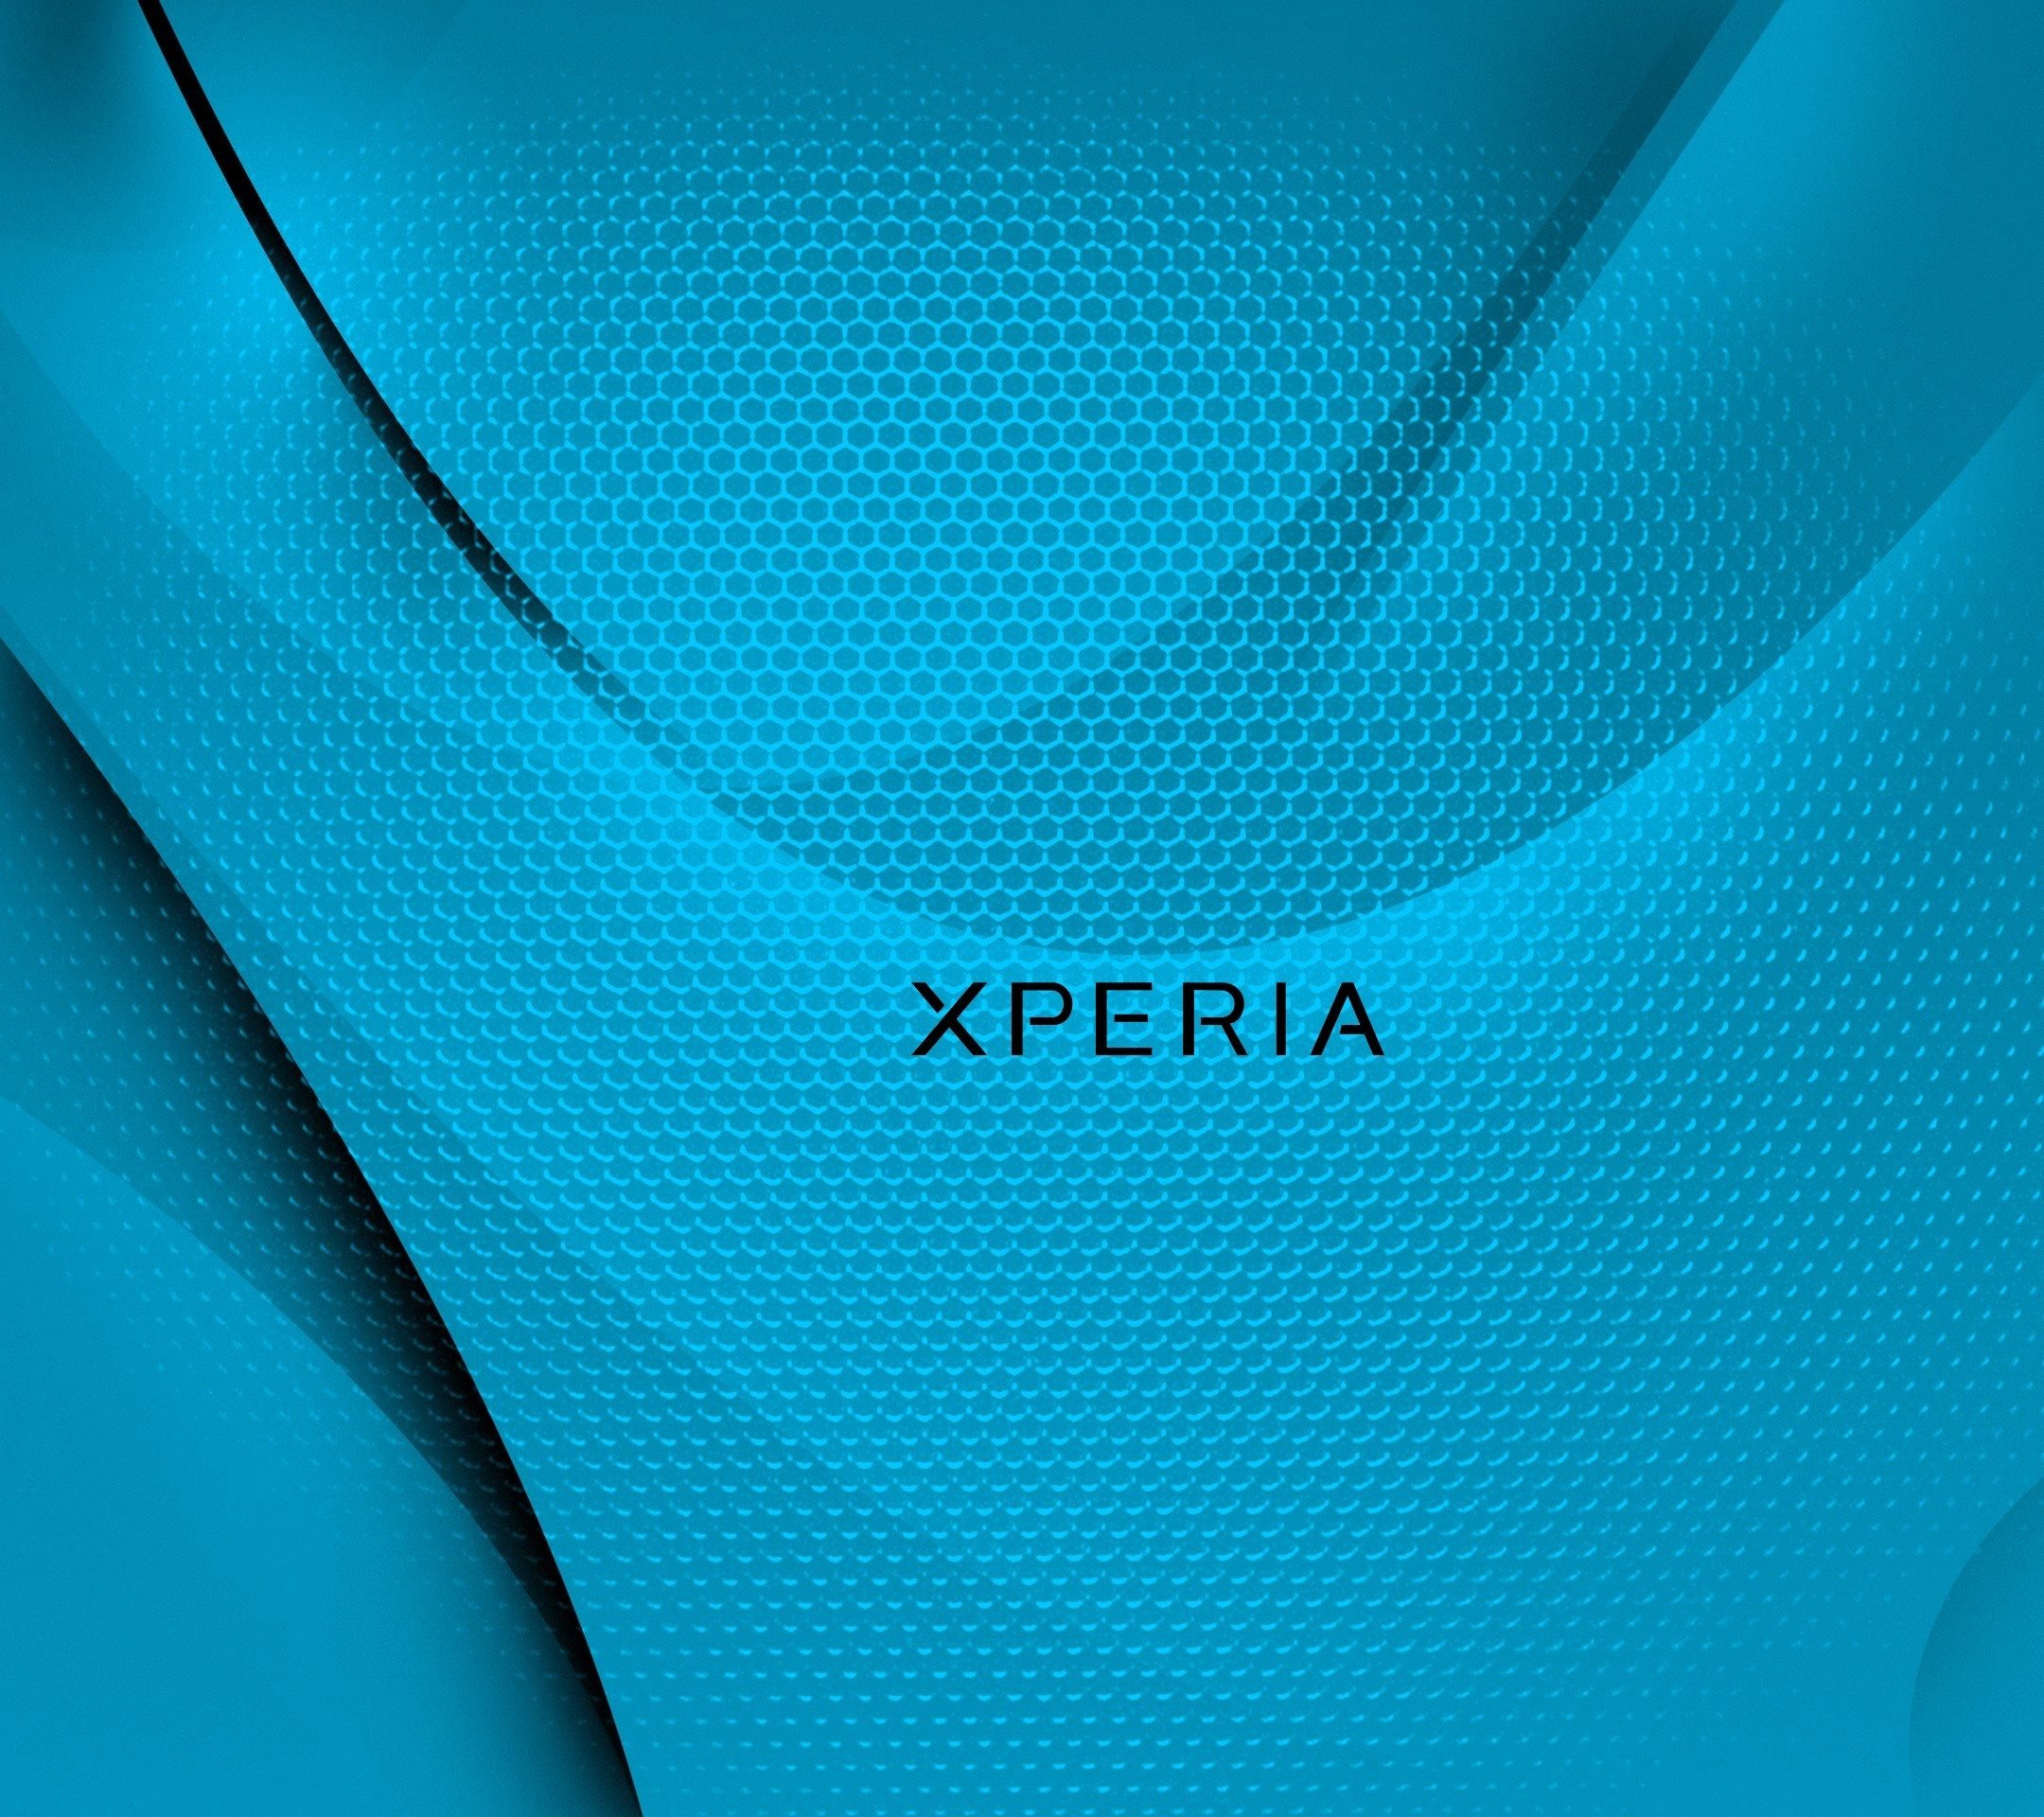 Sony Xperia обои HD